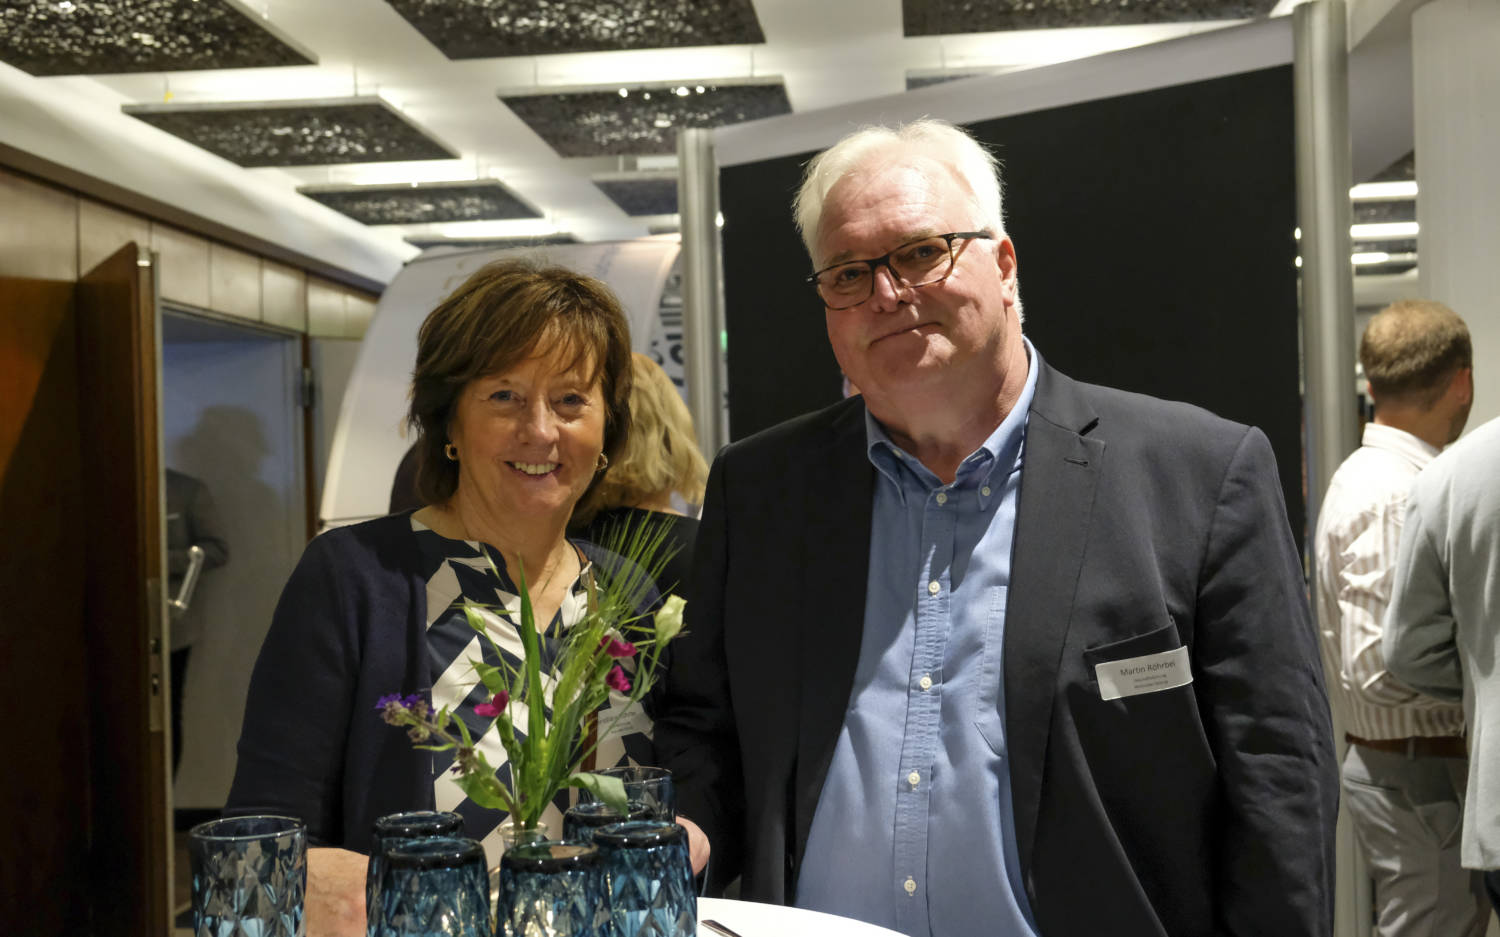 Martin Röhrbein, Geschäftsführer der Walsroder Zeitung, kam gemeinsam mit seiner Frau Christiane / ©Johanna Sprave